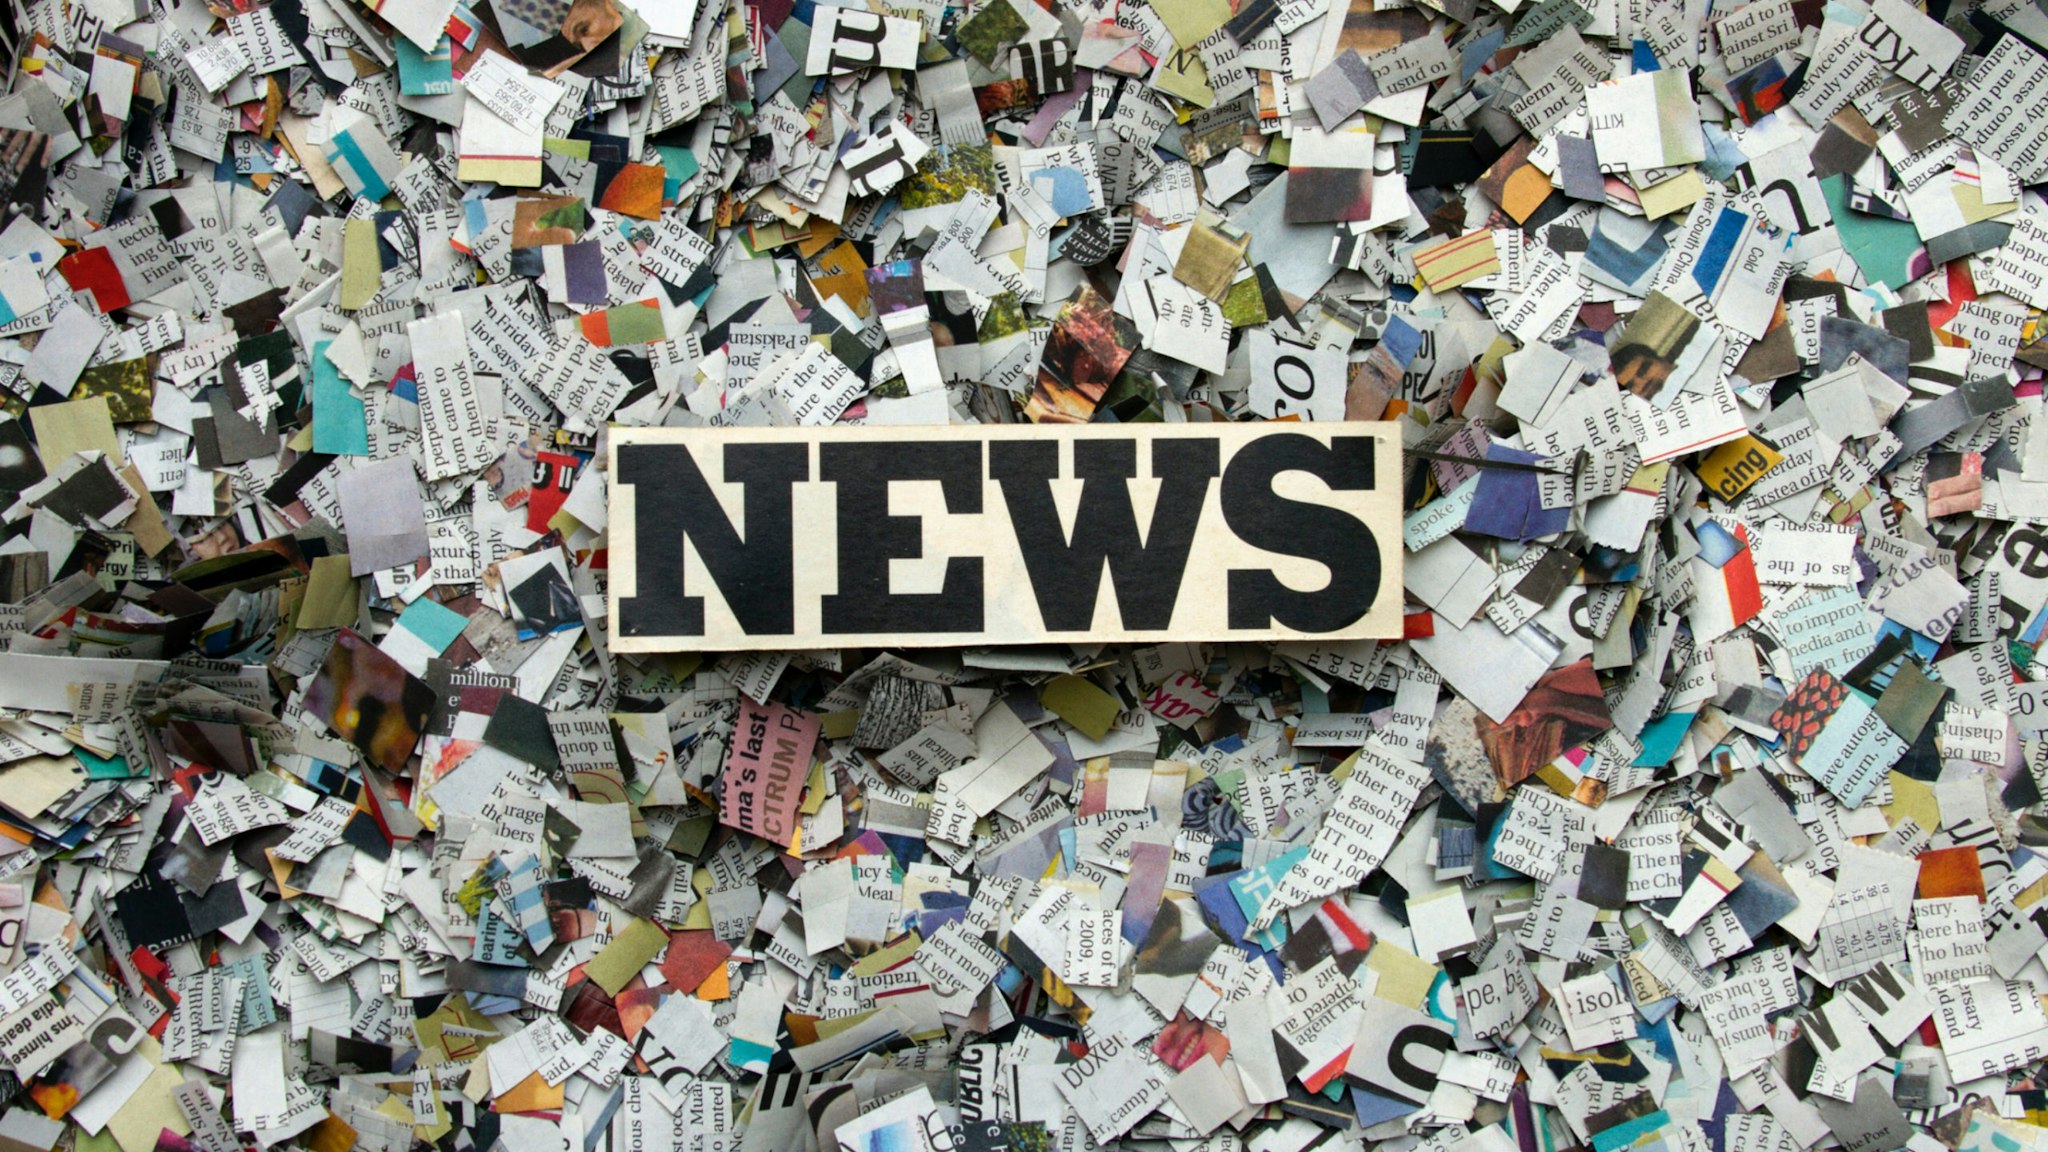 “NEWS” on block over shredded paper.